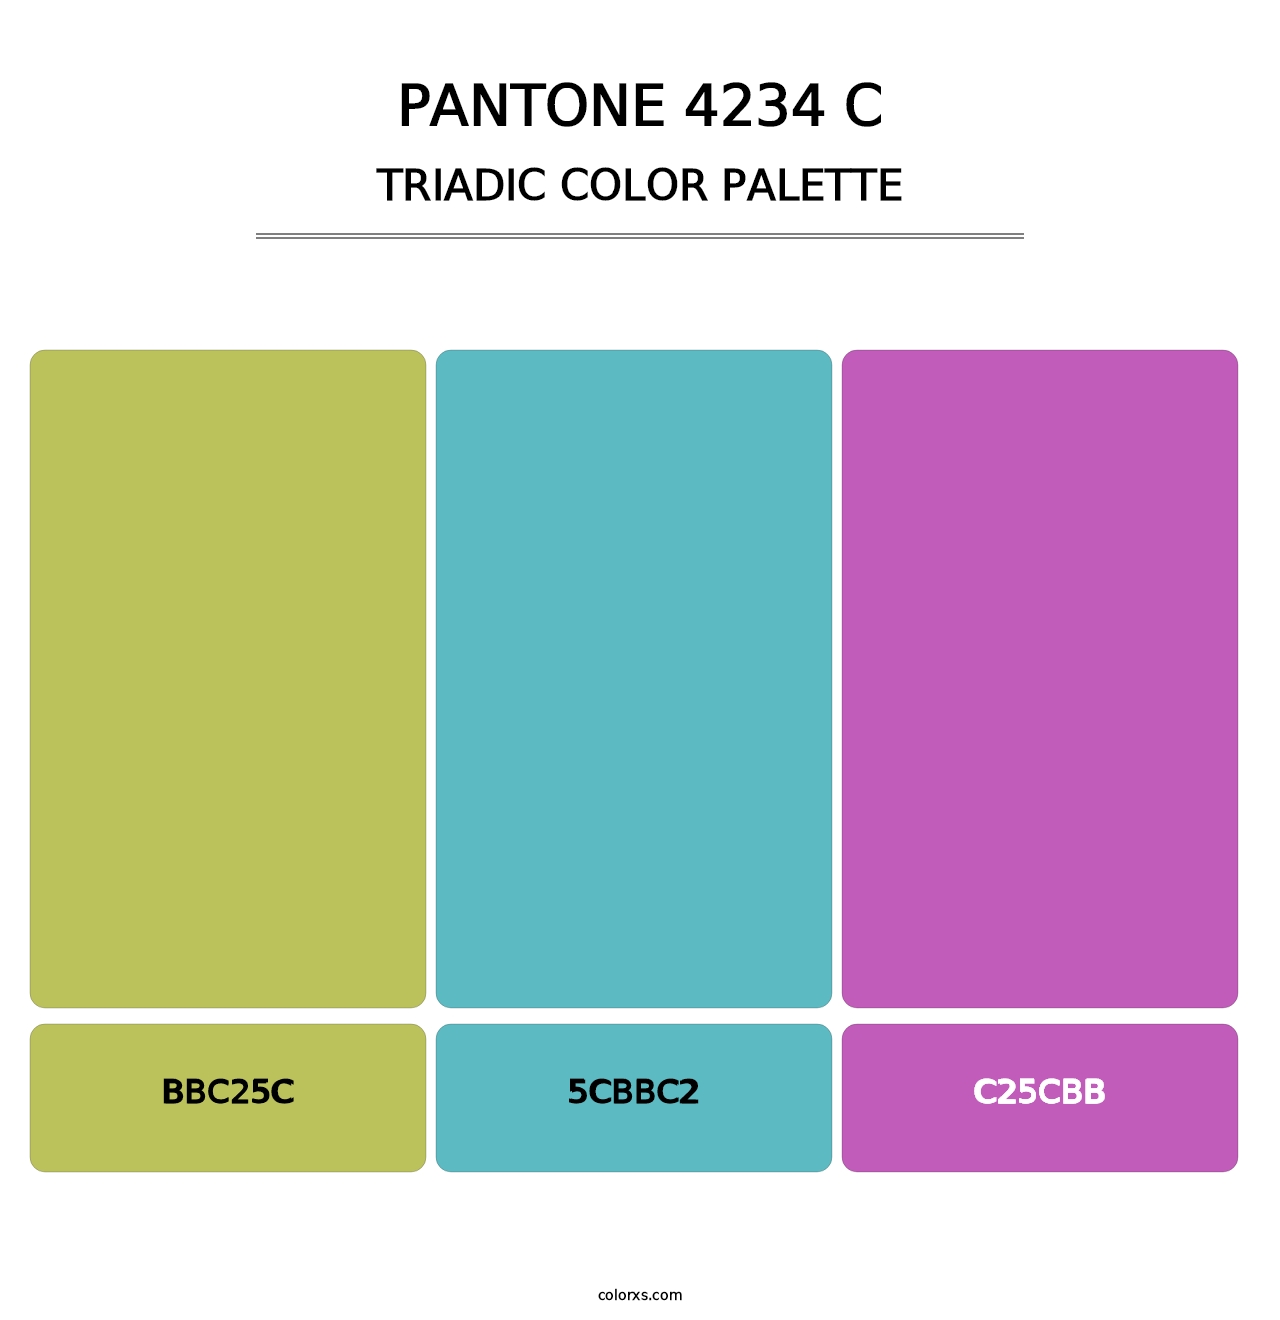 PANTONE 4234 C - Triadic Color Palette